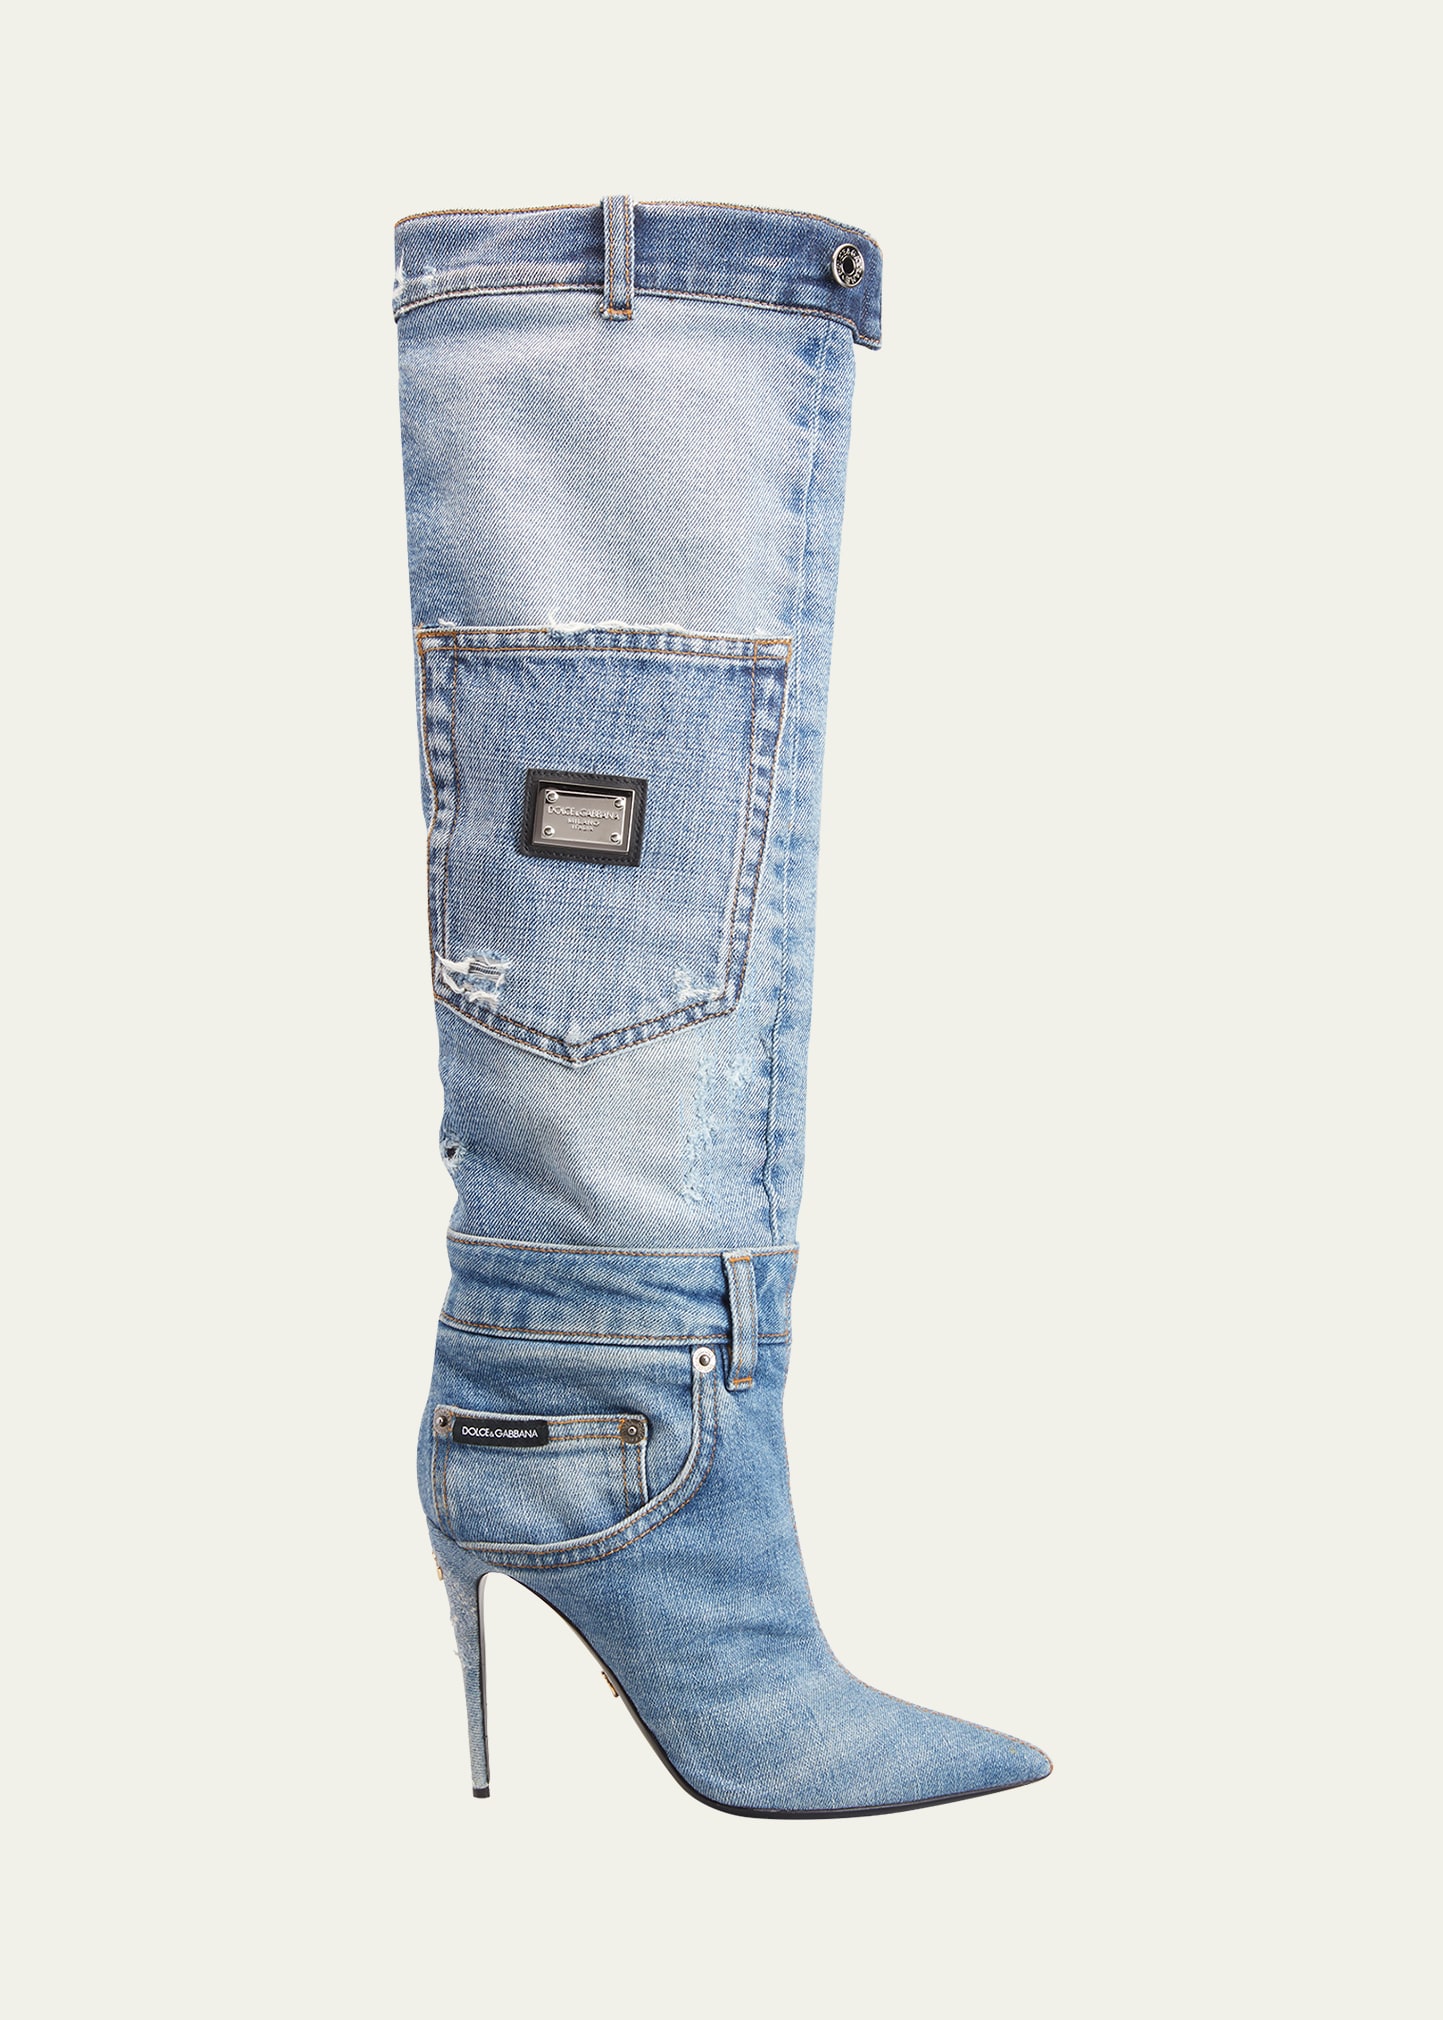 DOLCE & GABBANA Boots for Women | ModeSens